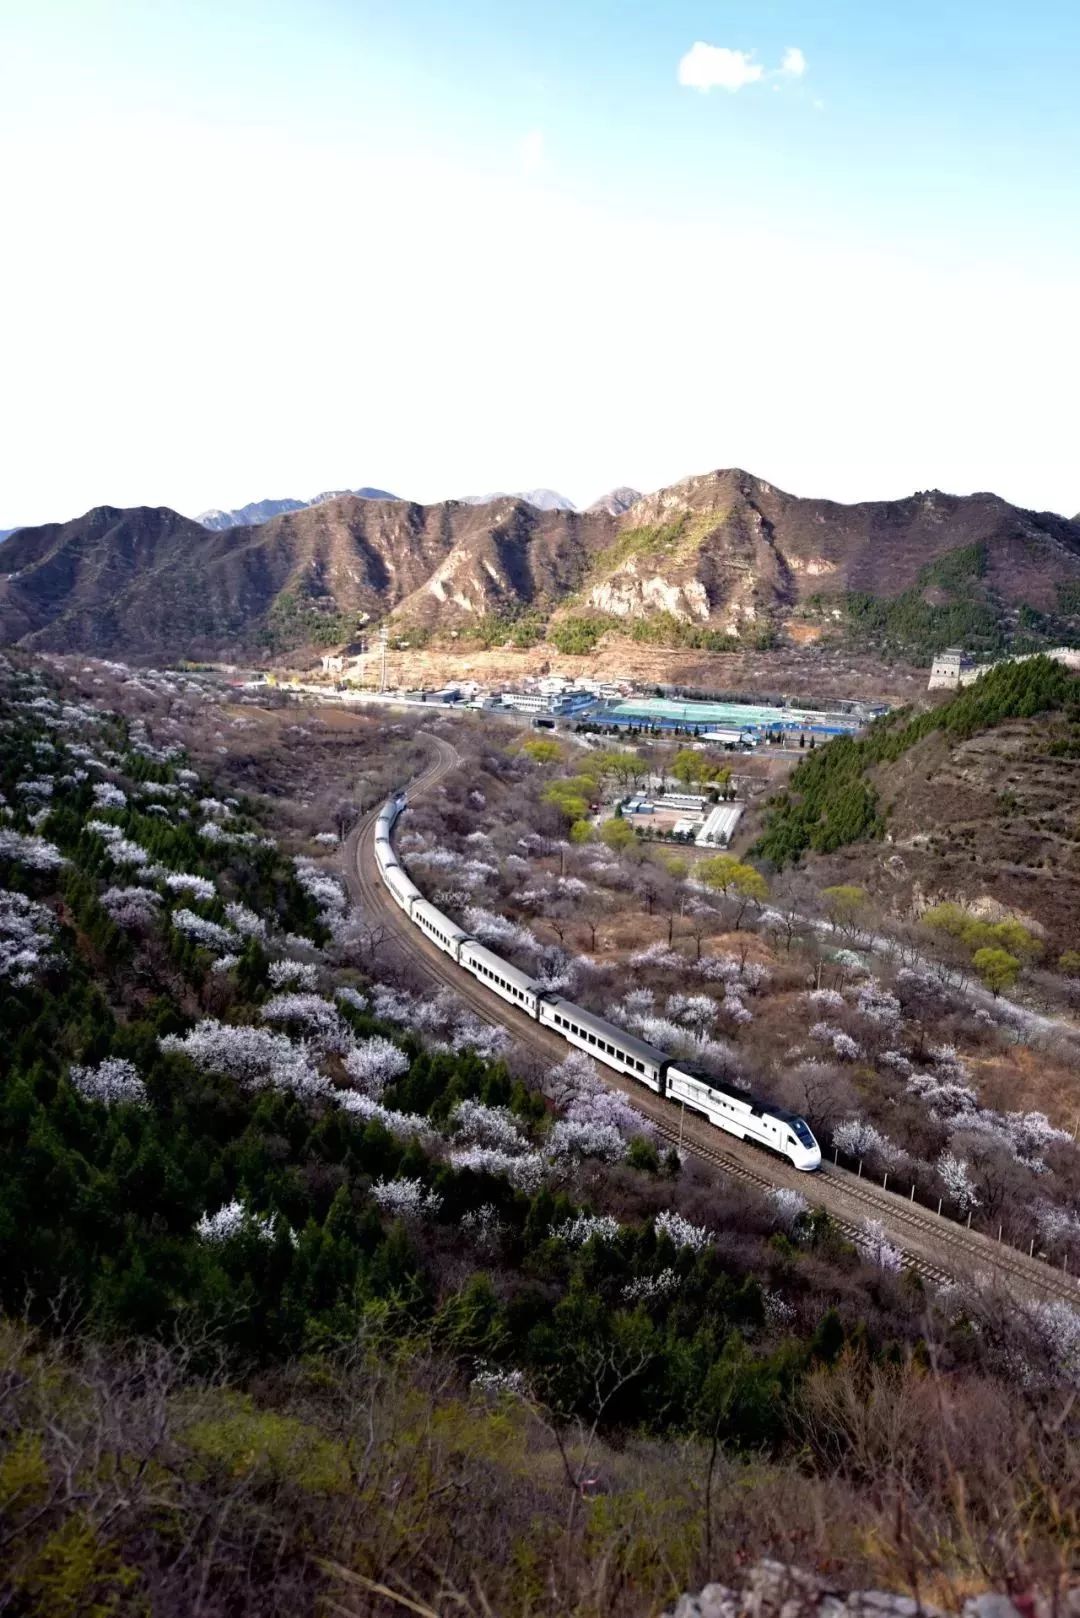 京郊铁路图片